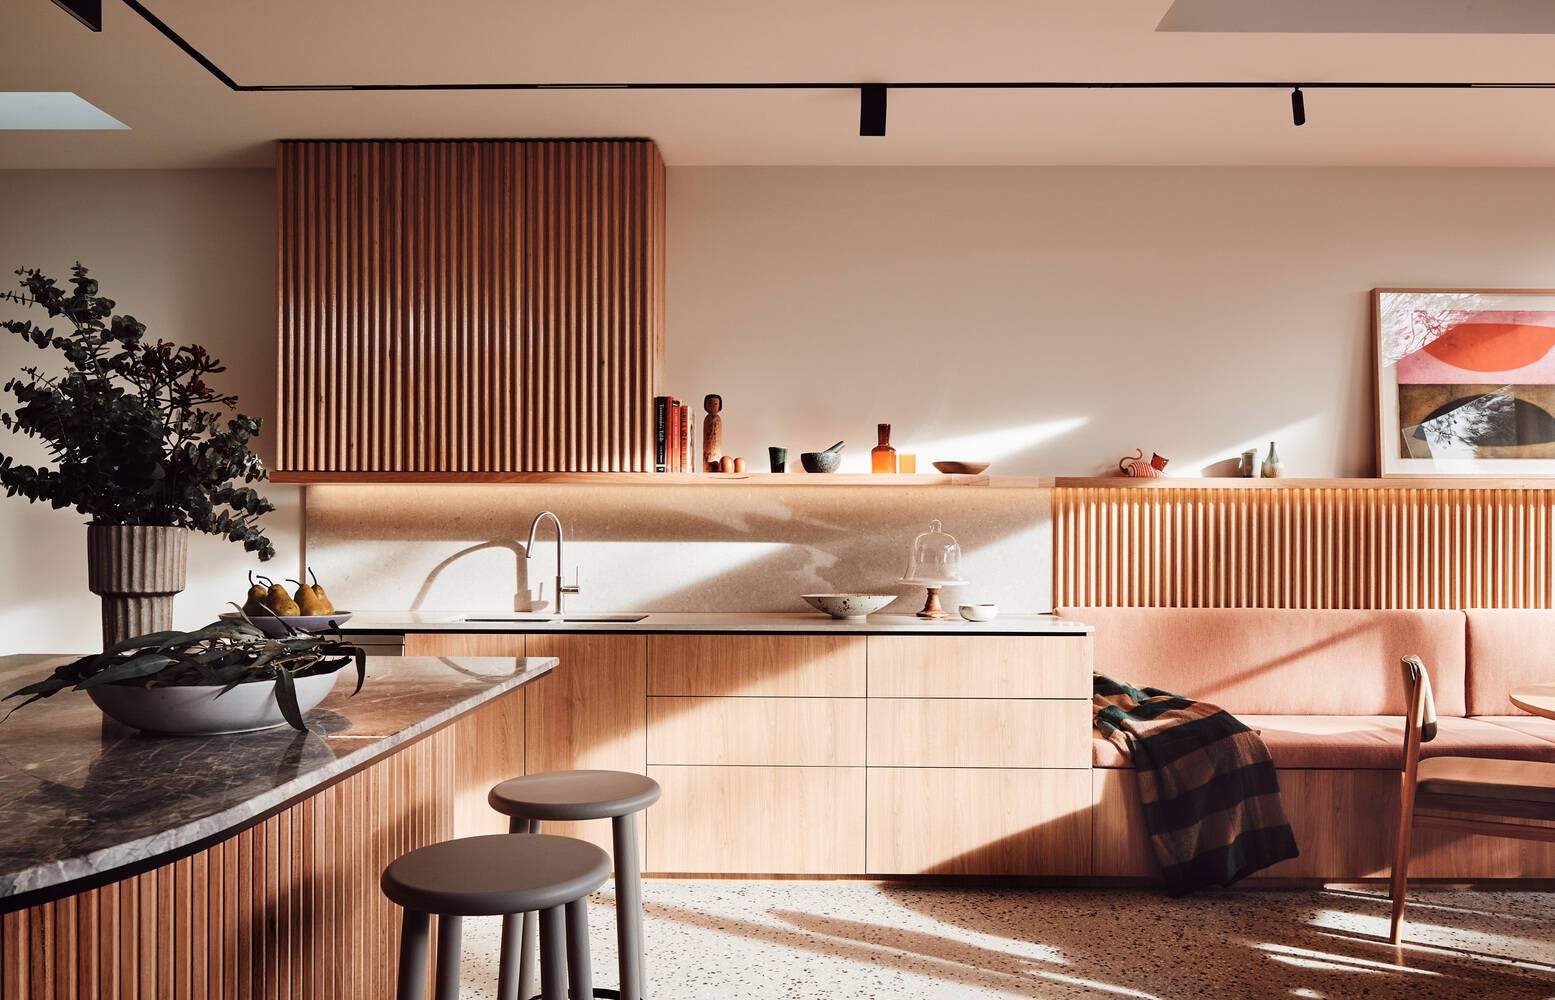 
Để tăng thêm vẻ sang trọng, hiện đại cho 10 Fold House, đảo bếp sử dụng đá hoa cương màu đen và hệ tủ kệ bếp bằng gỗ
